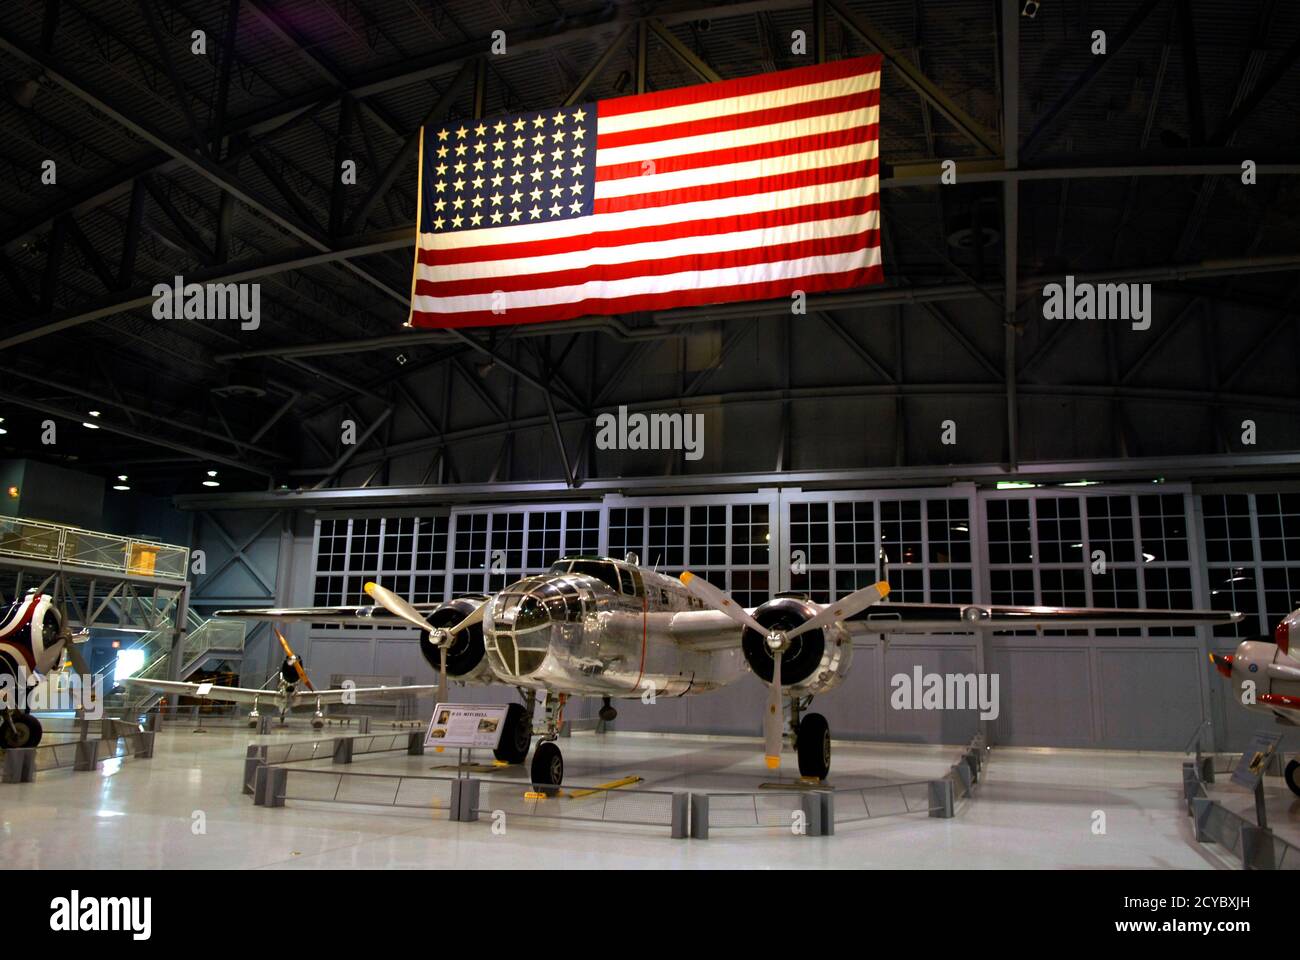 B-25 aviones Mitchell de la Segunda Guerra Mundial en exhibición en La Asociación de aviones experimentales EAA Museo de Aventura Aérea Oshkosh Wisconsin con 48 estrellas u Foto de stock